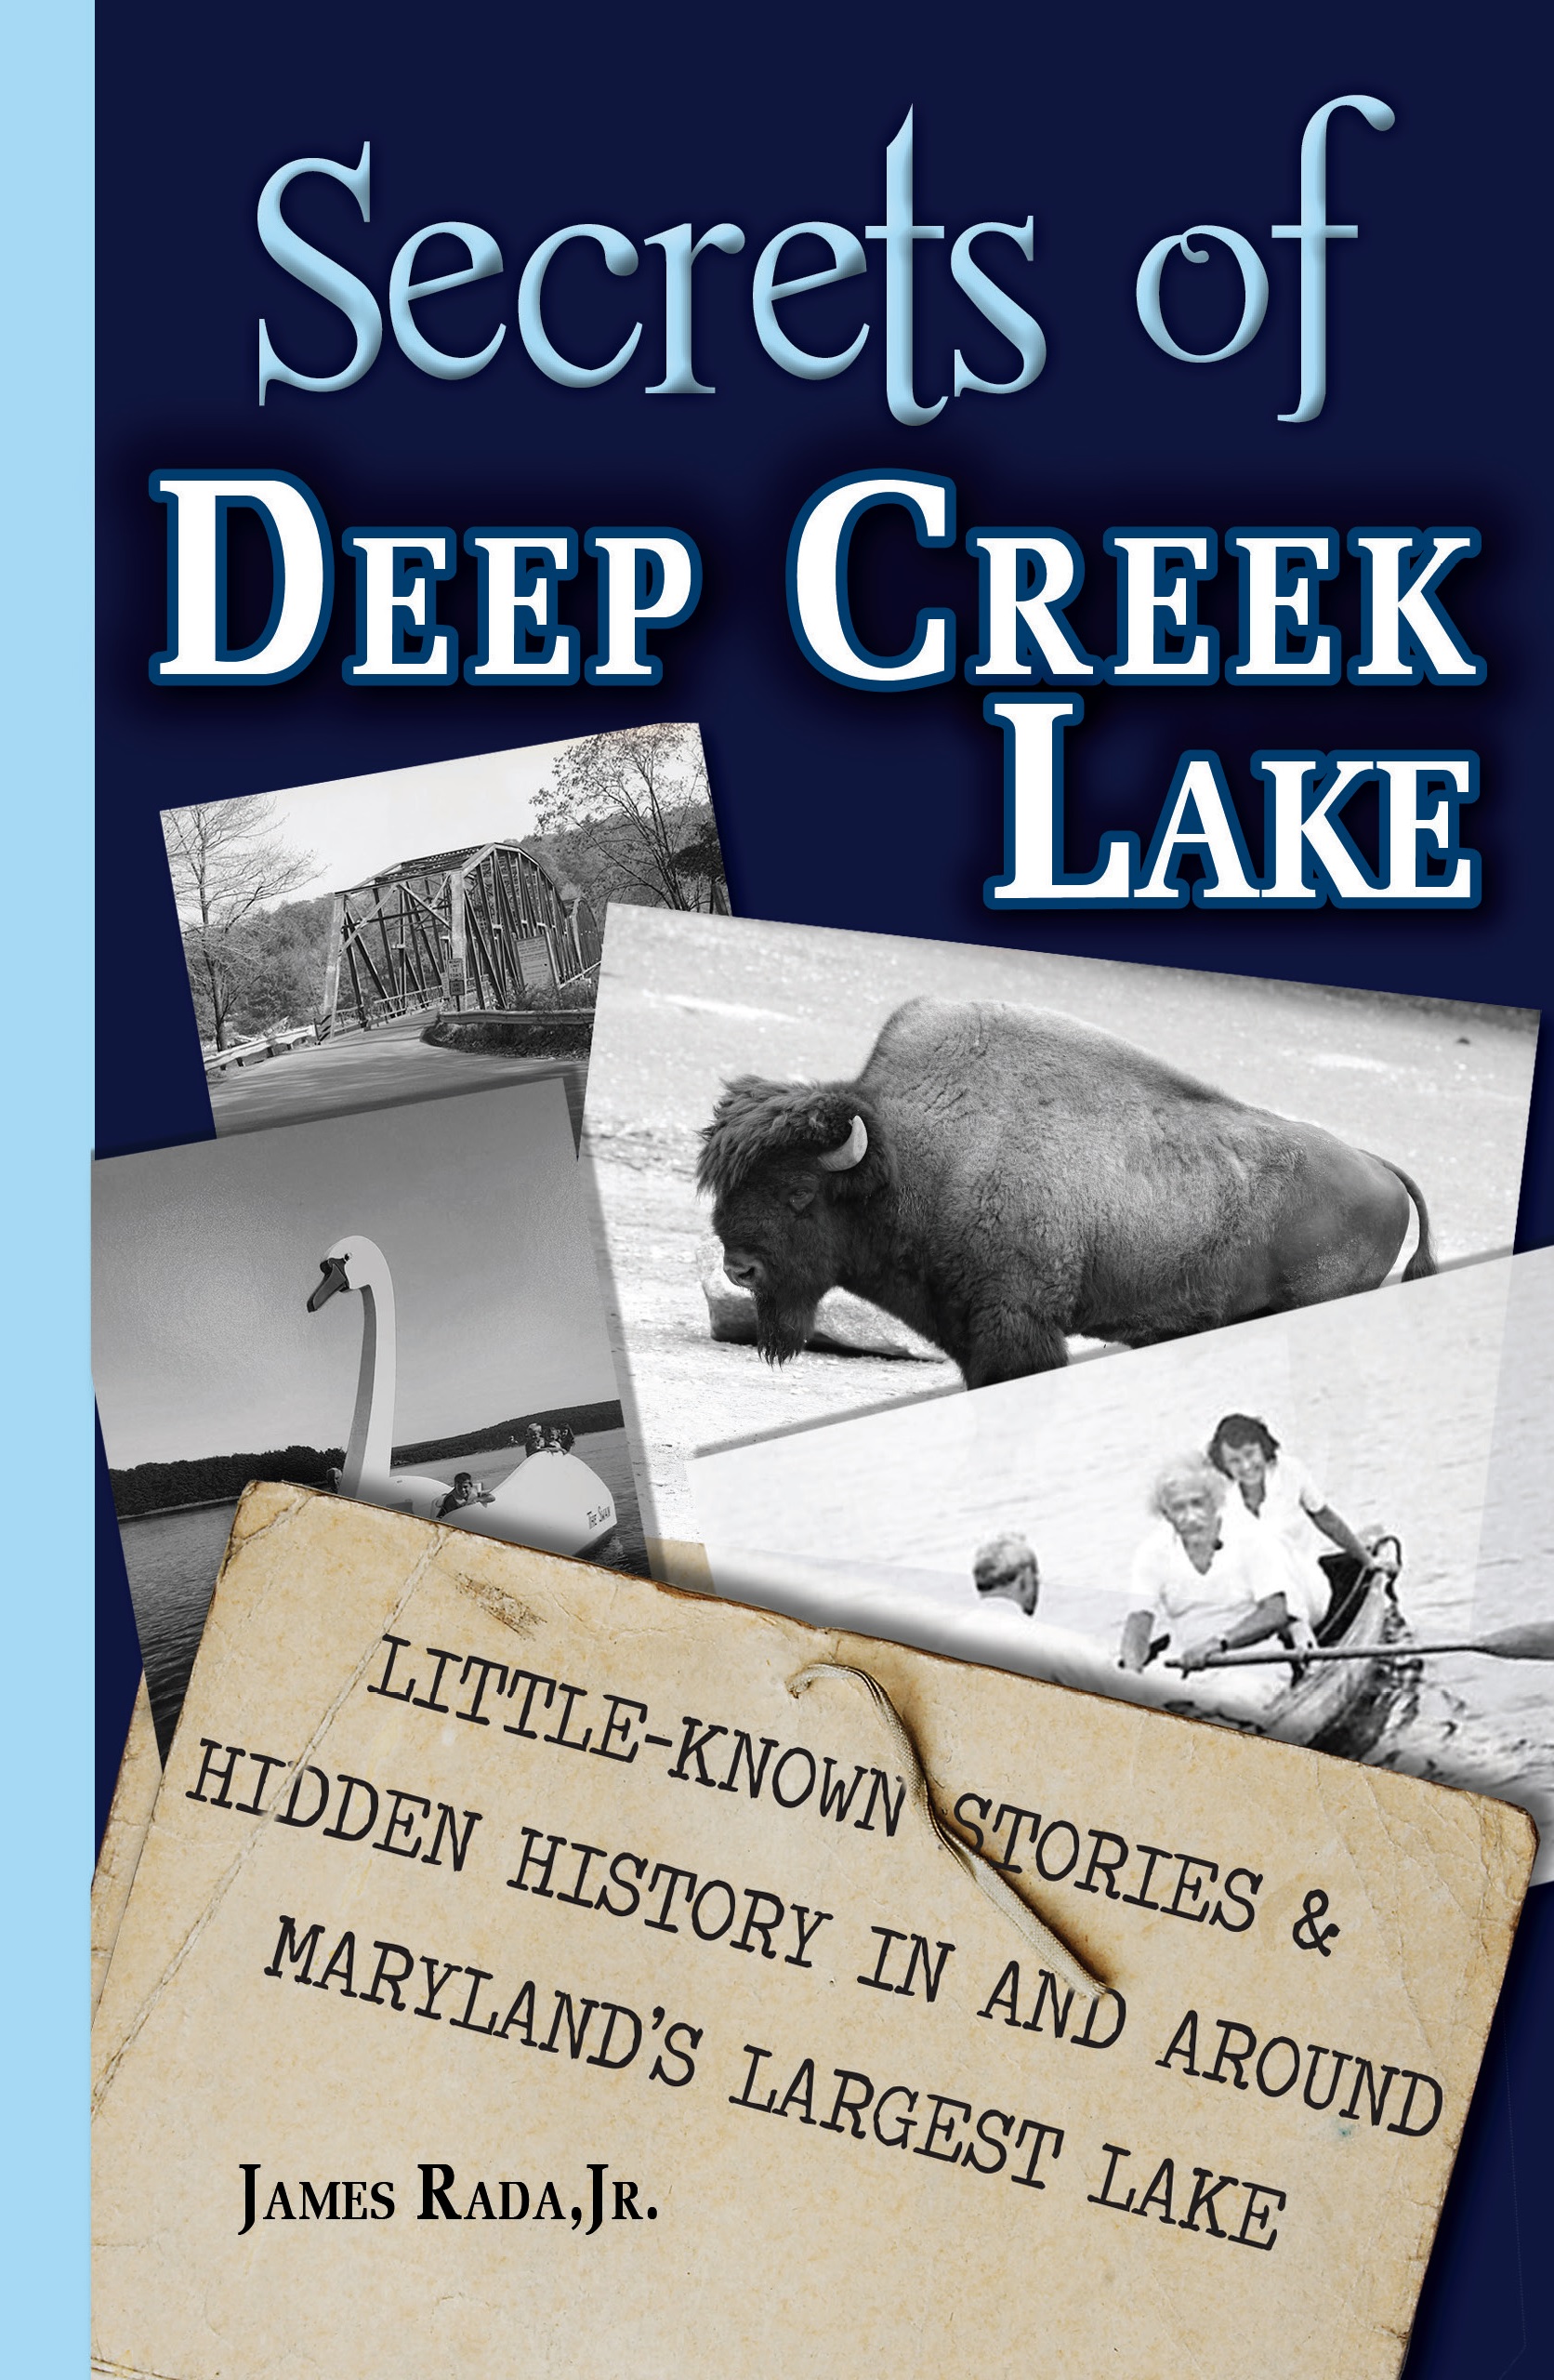 Secrets of Deep Creek Lake